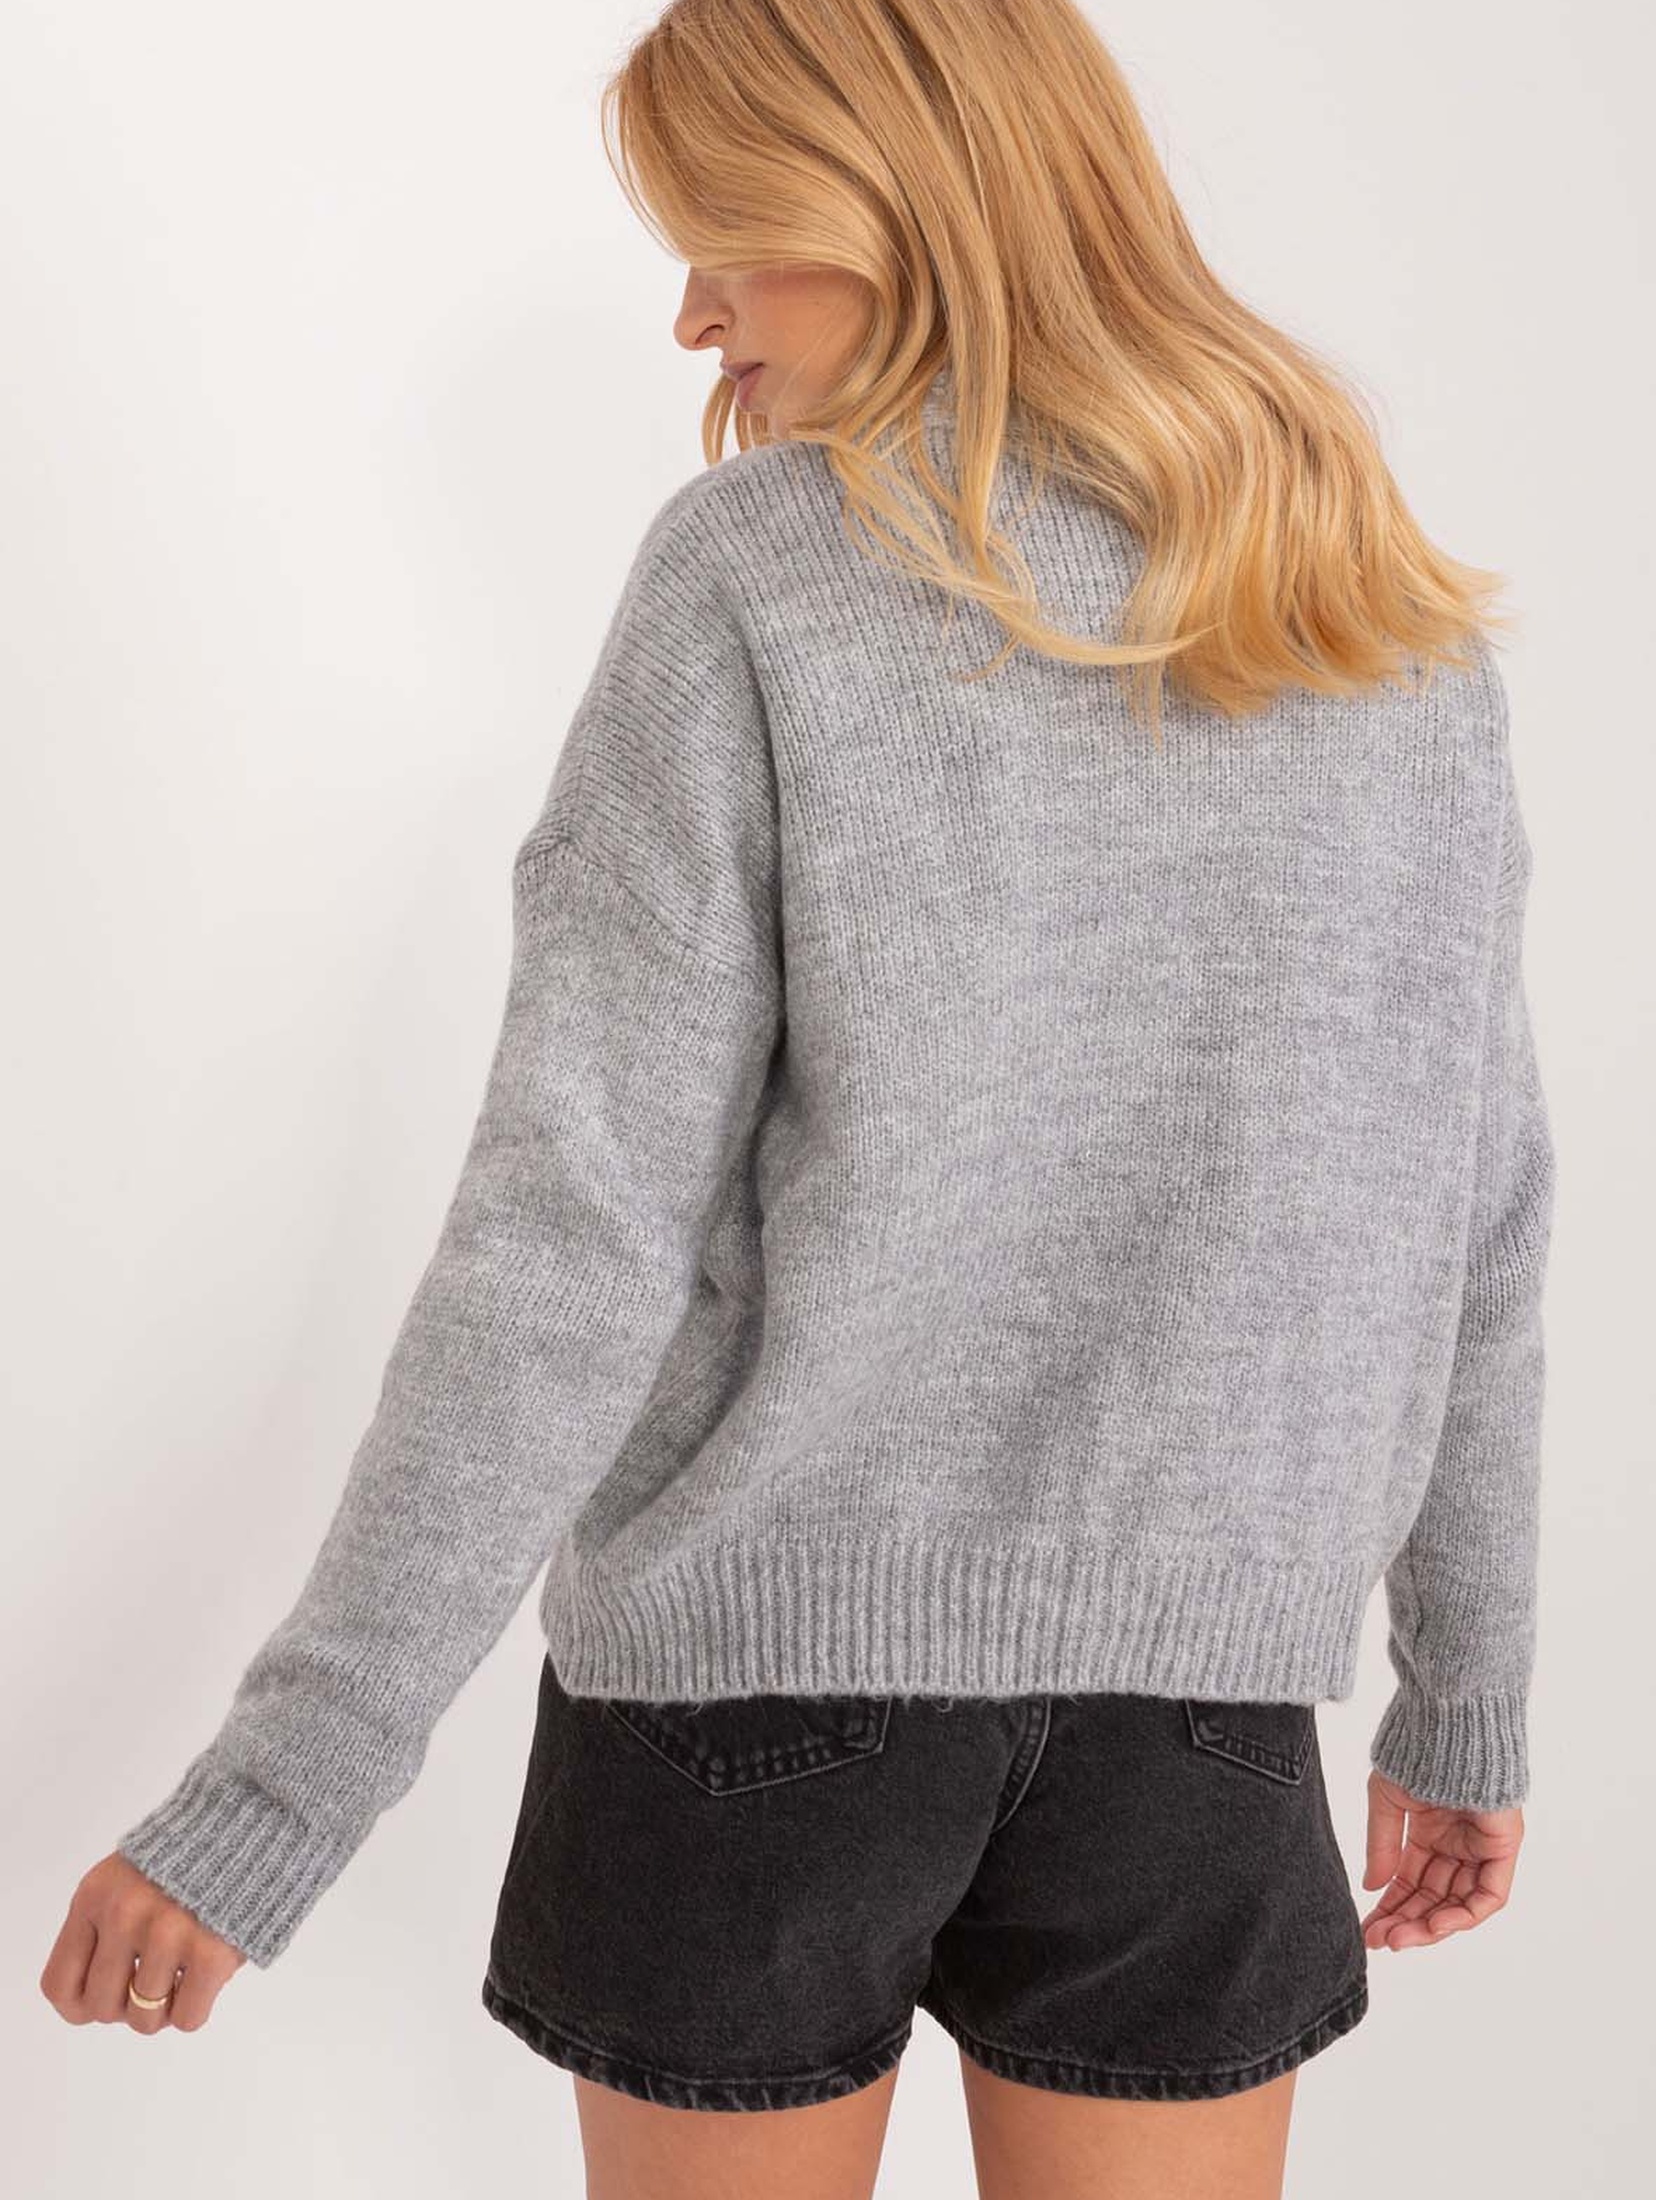 Szary rozpinany sweter damski z kieszeniami